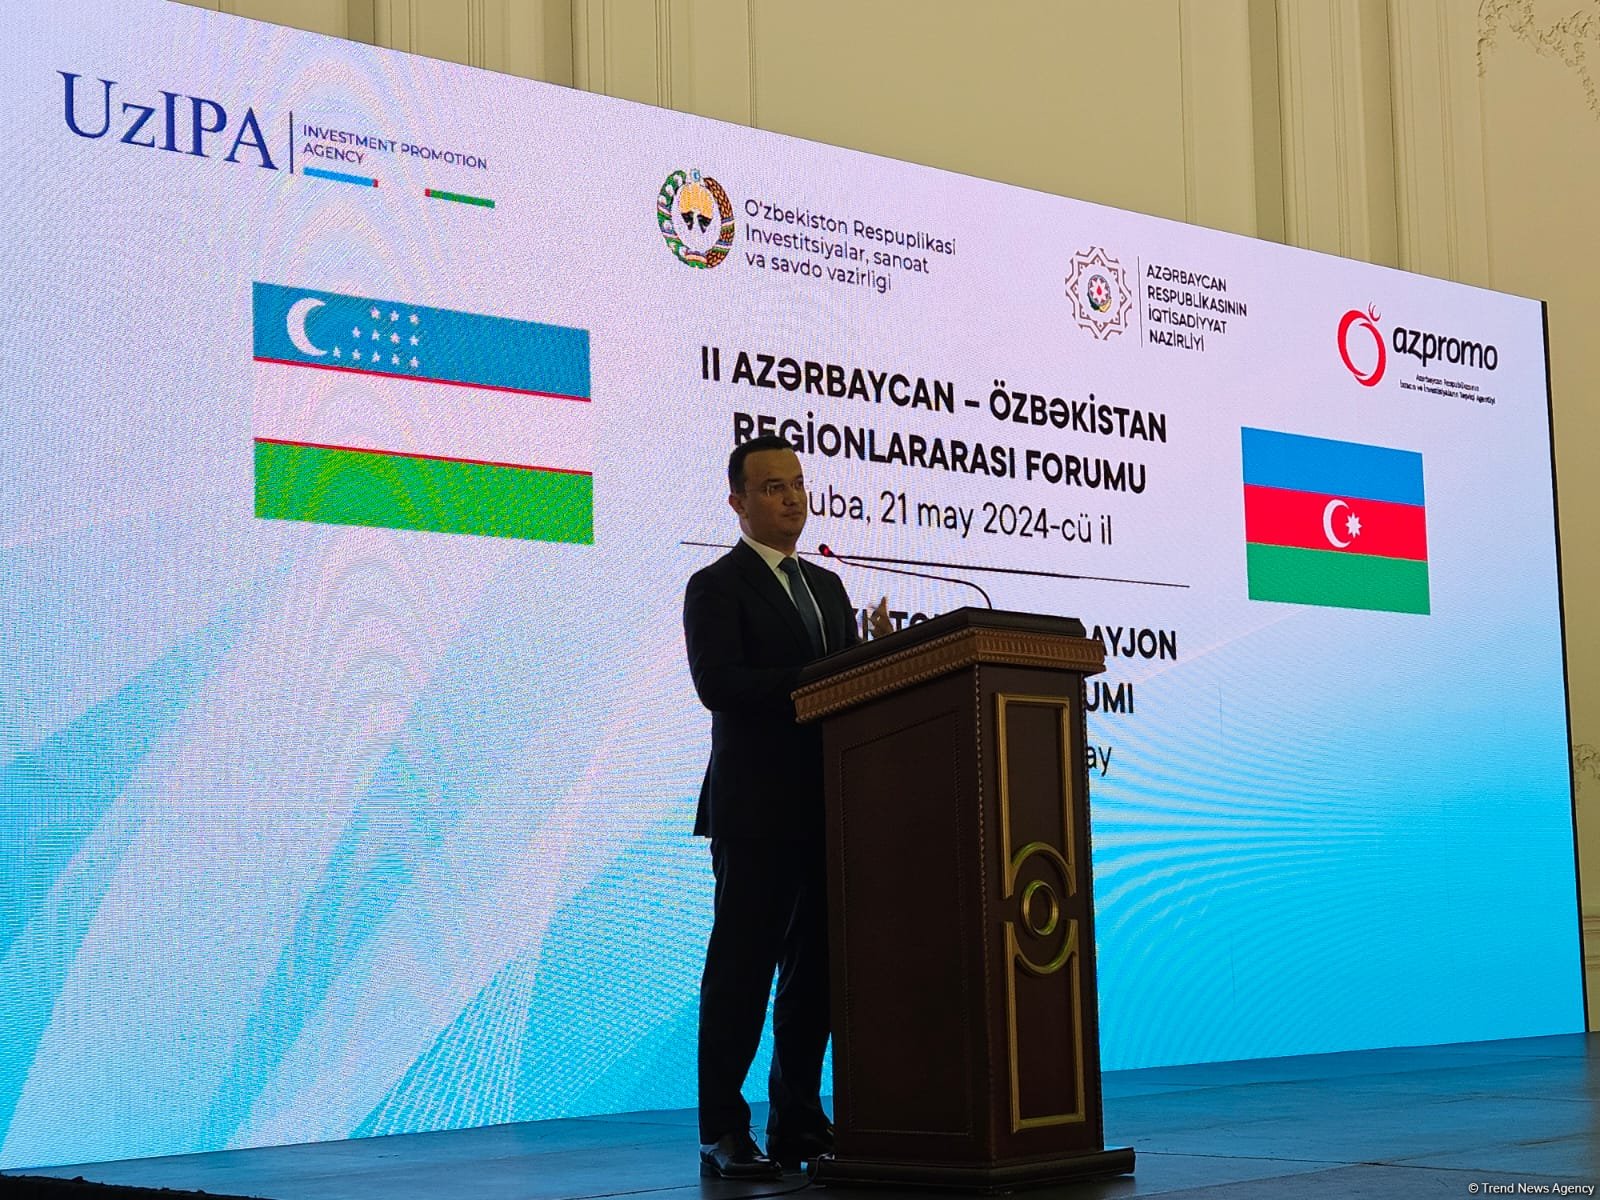 Азербайджан и Узбекистан планируют создать совместную коммерческую онлайн платформу - Лазиз Кудратов